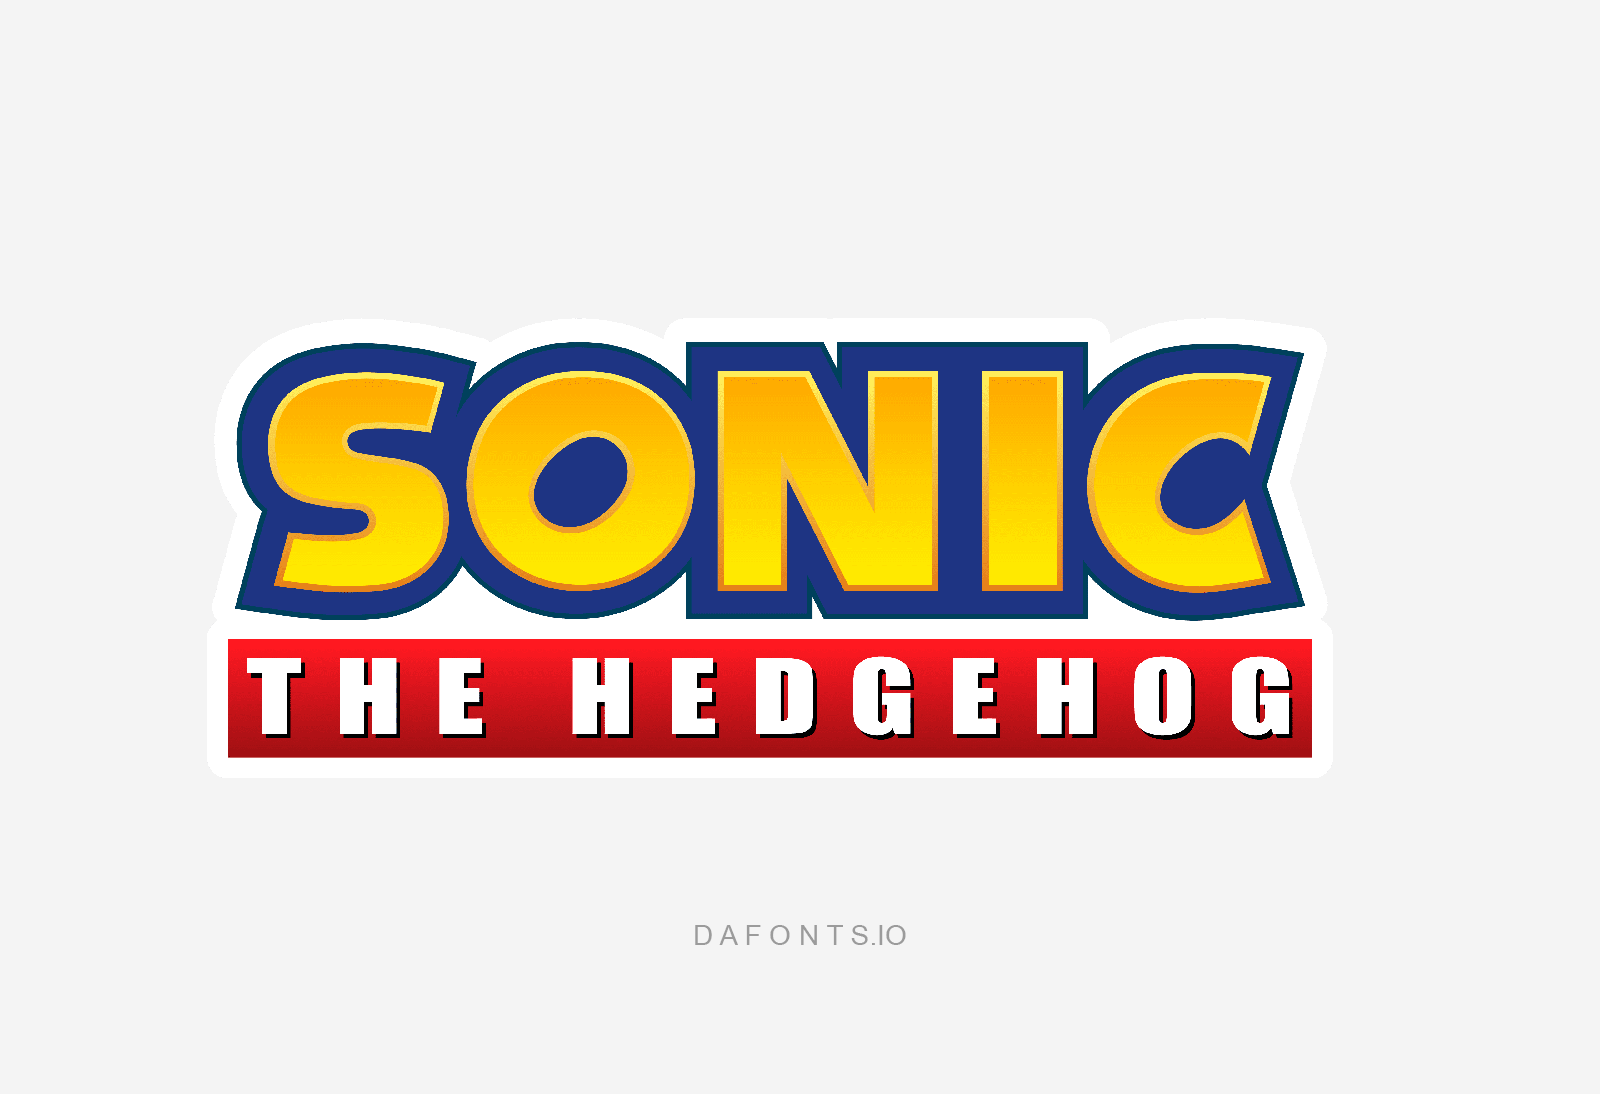 Sonic Font